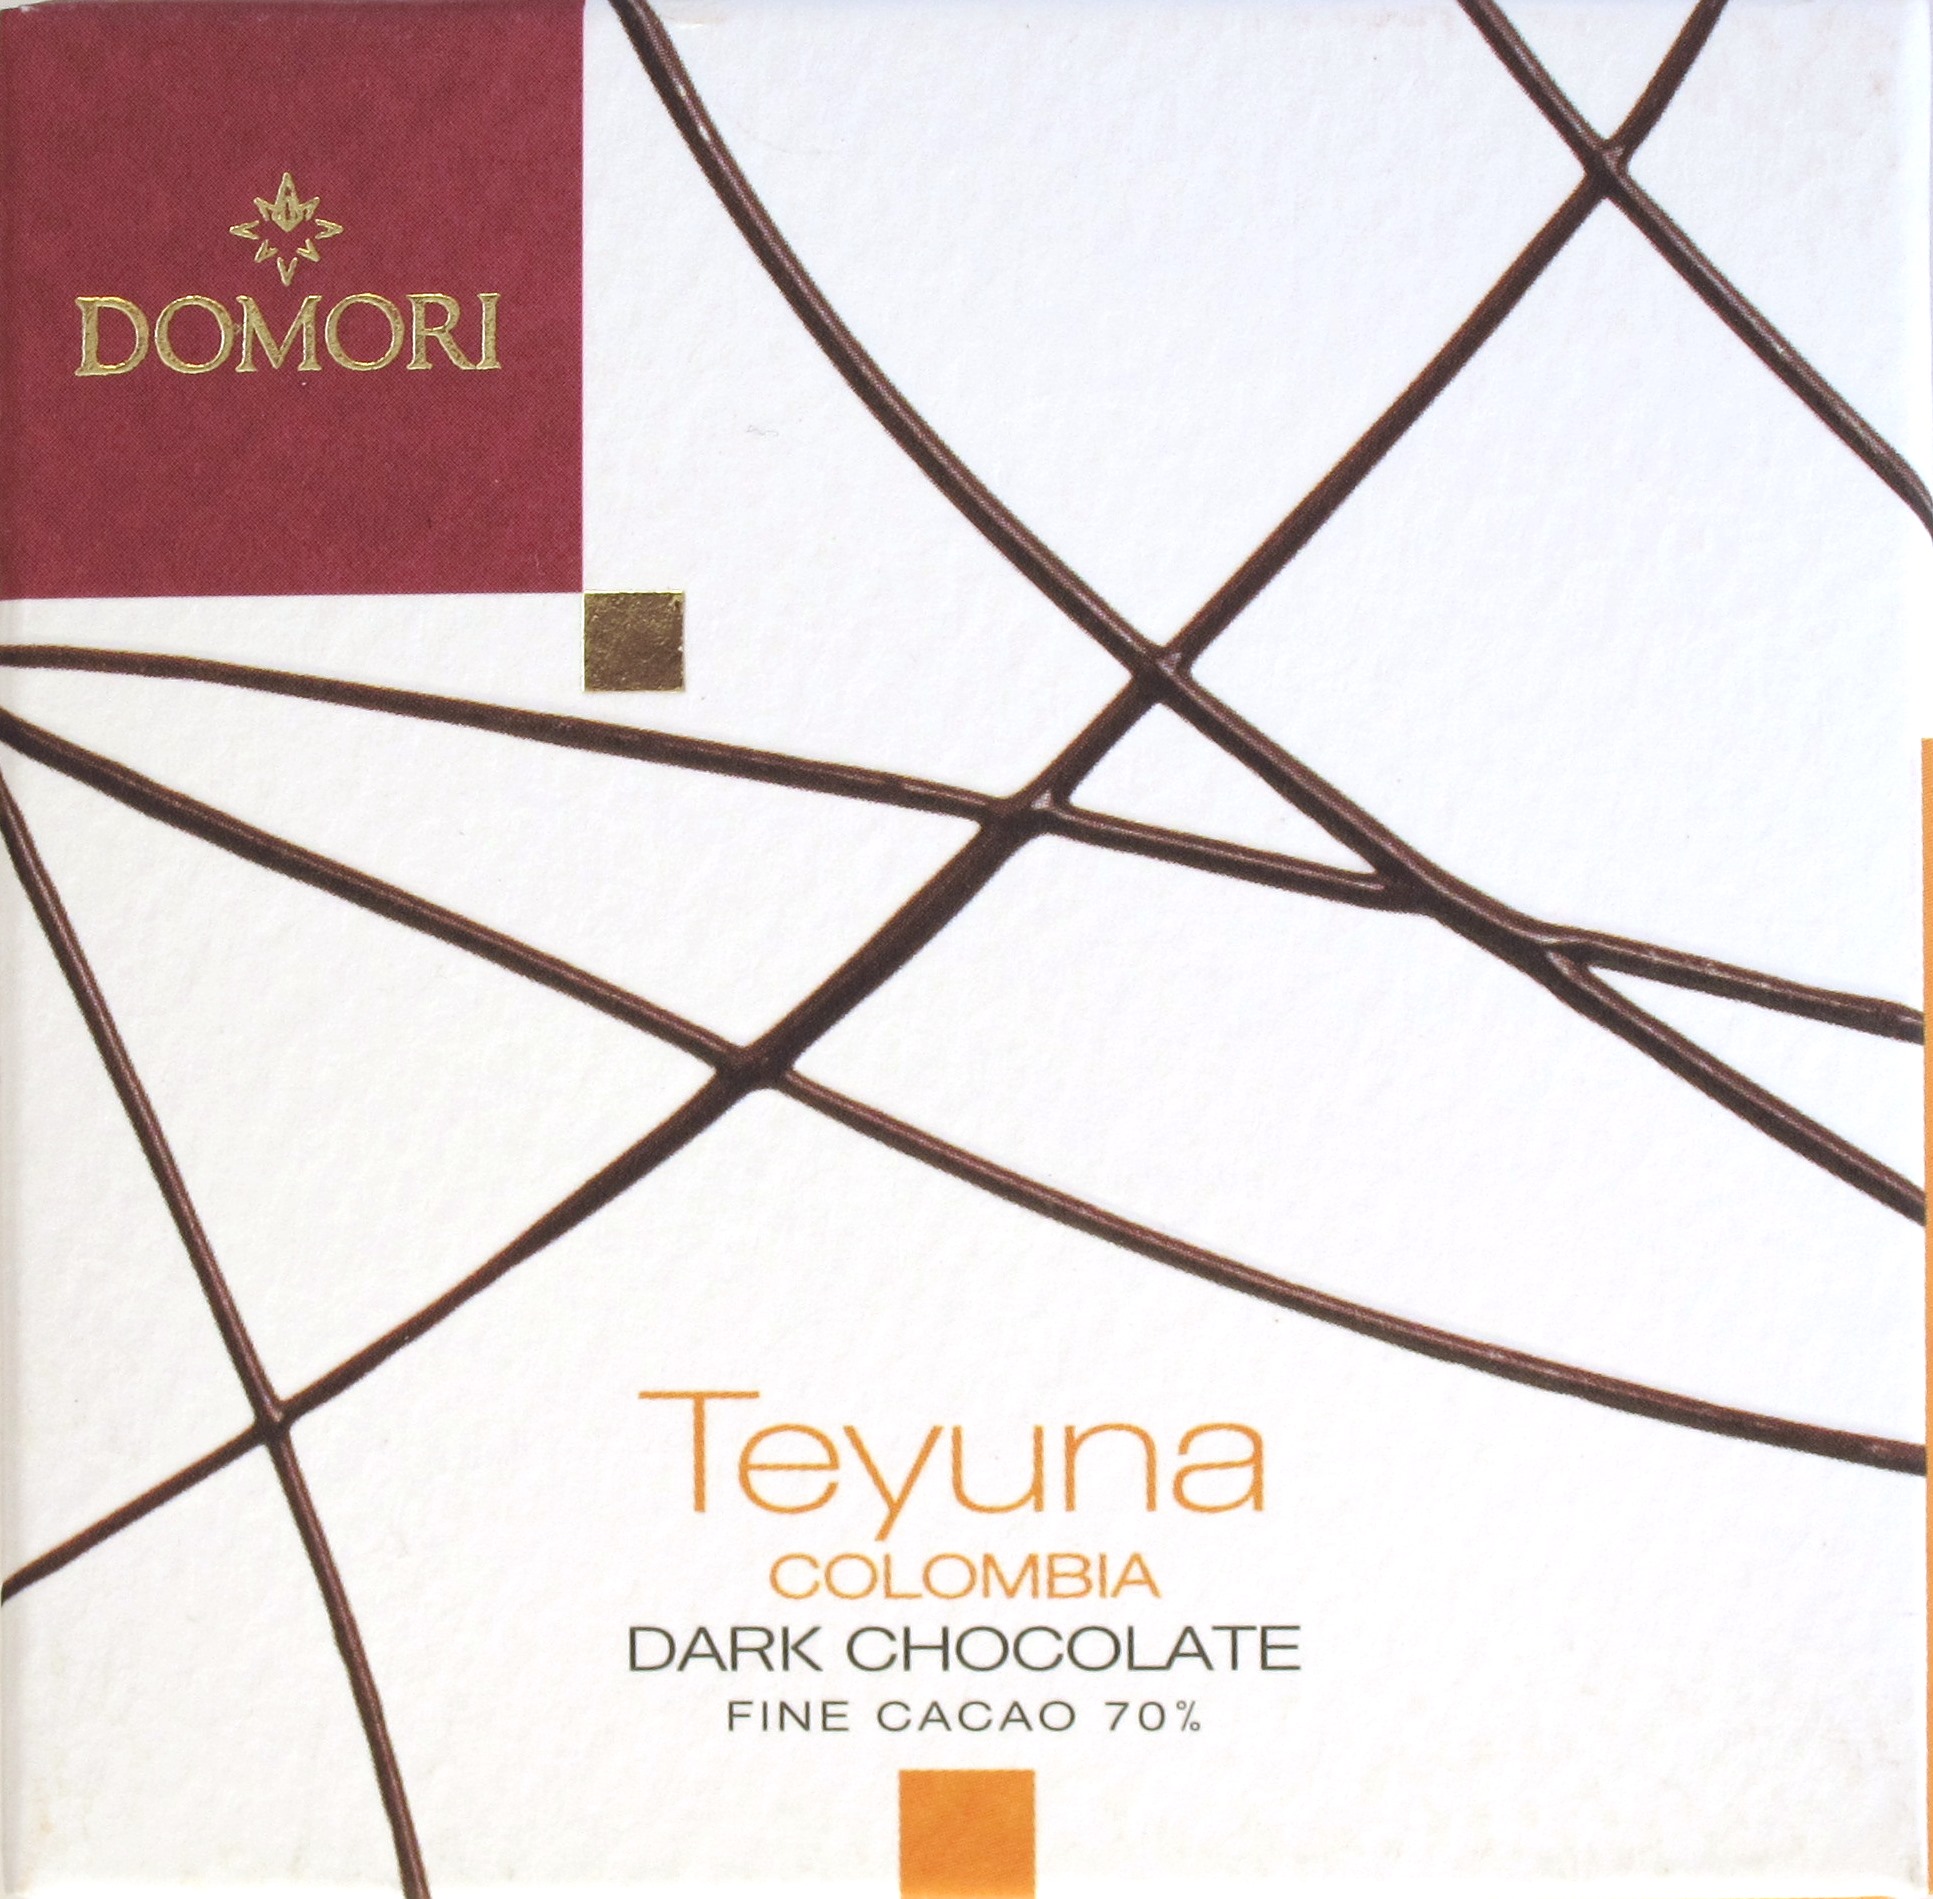 Domori Kolumbien-Bitterschokolade "Teyuna"